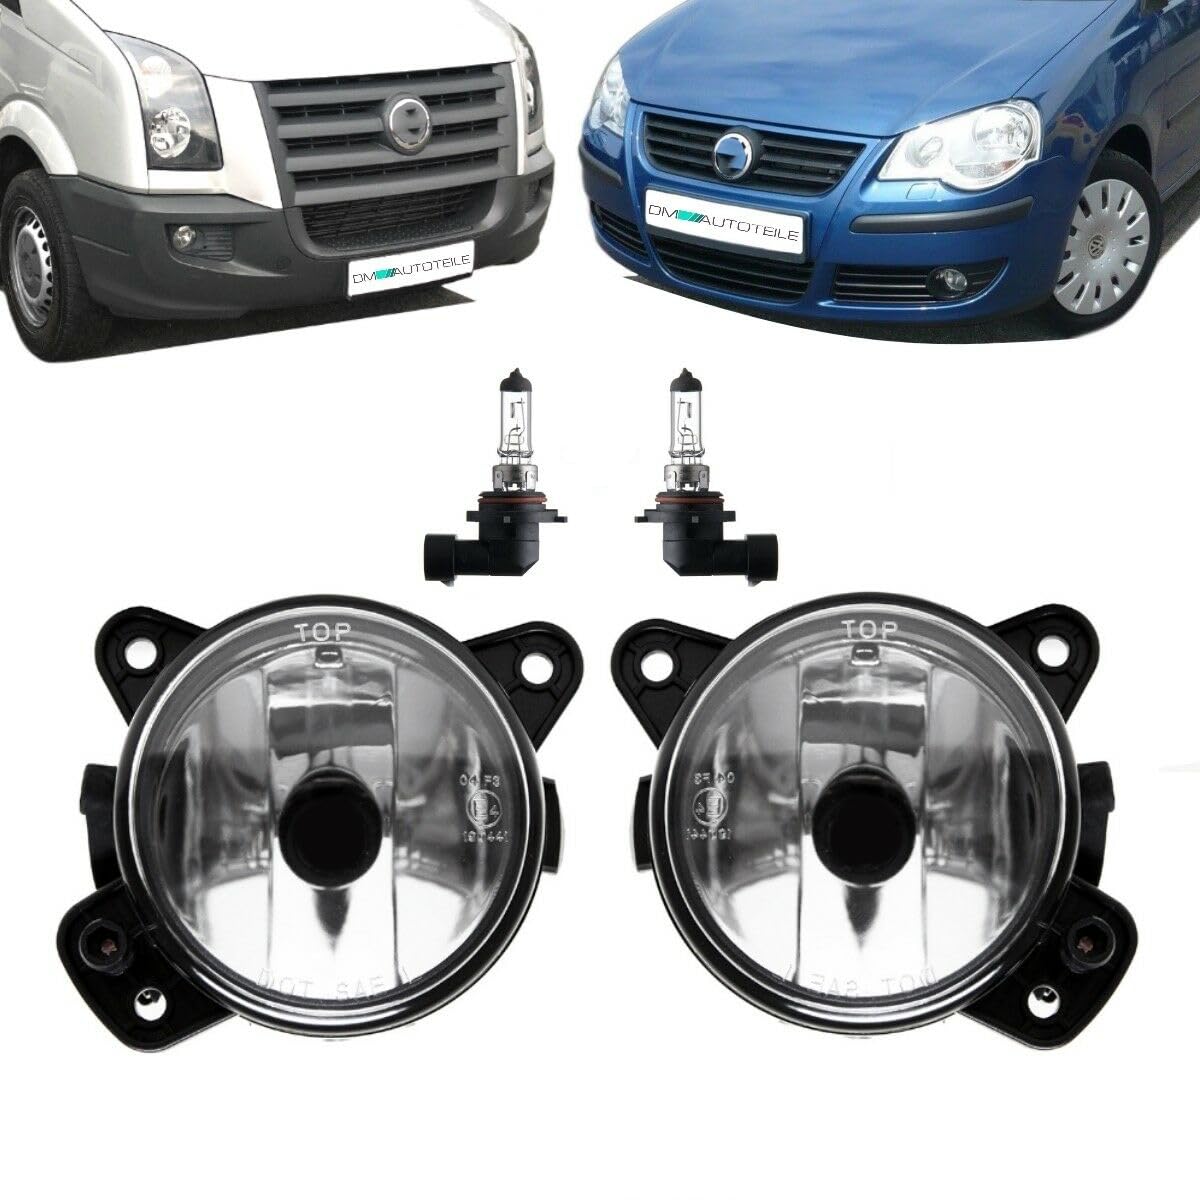 DM Autoteile Nebelscheinwerfer SET Chrom Klarglas HB4 kompatibel für VW Crafter T5 Polo 9N von DM Autoteile